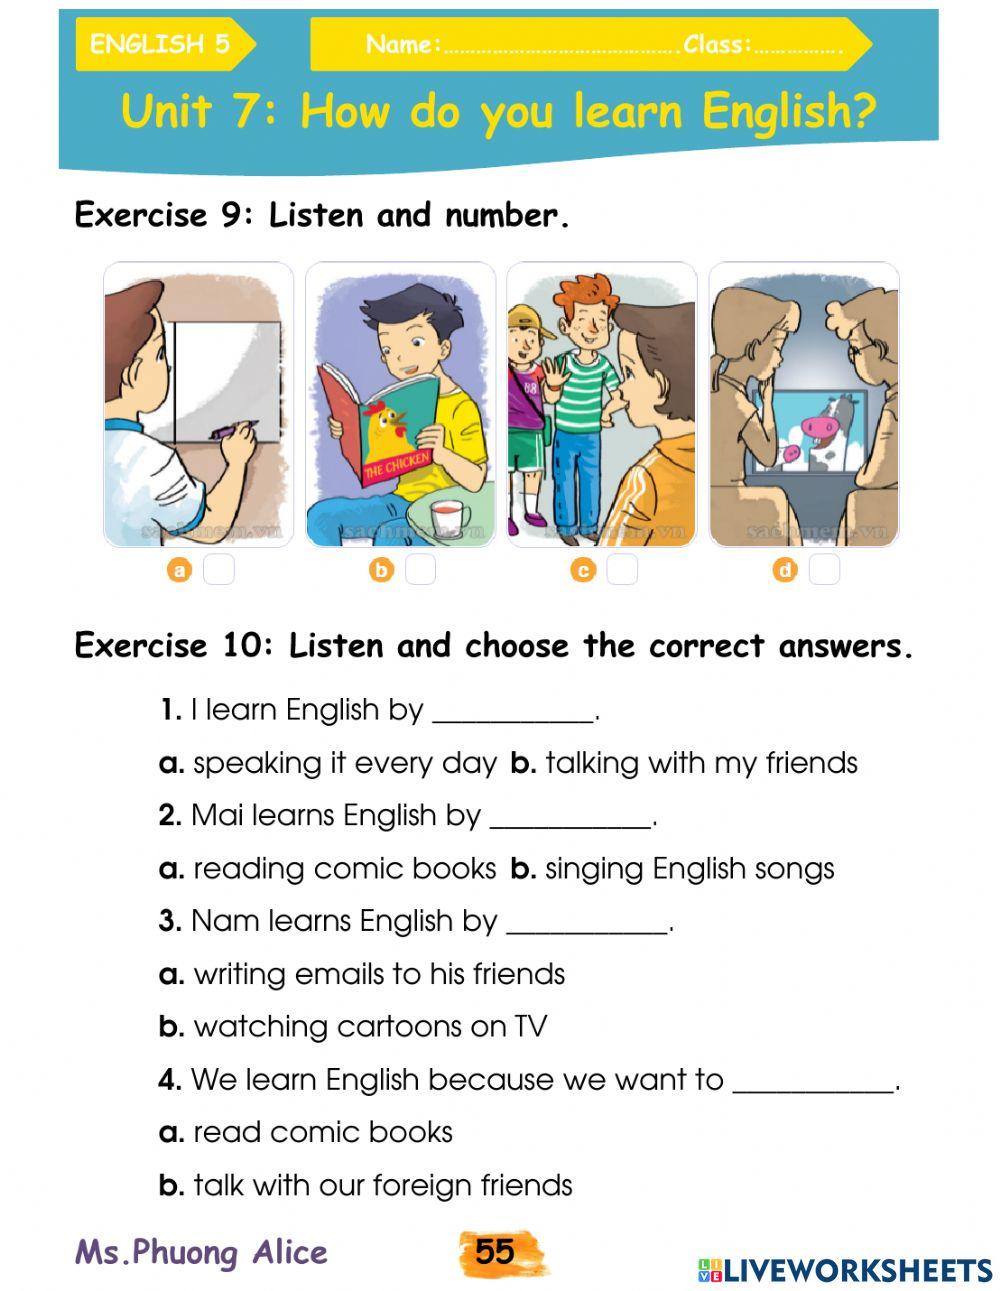 E5-U7-How do you learn English?